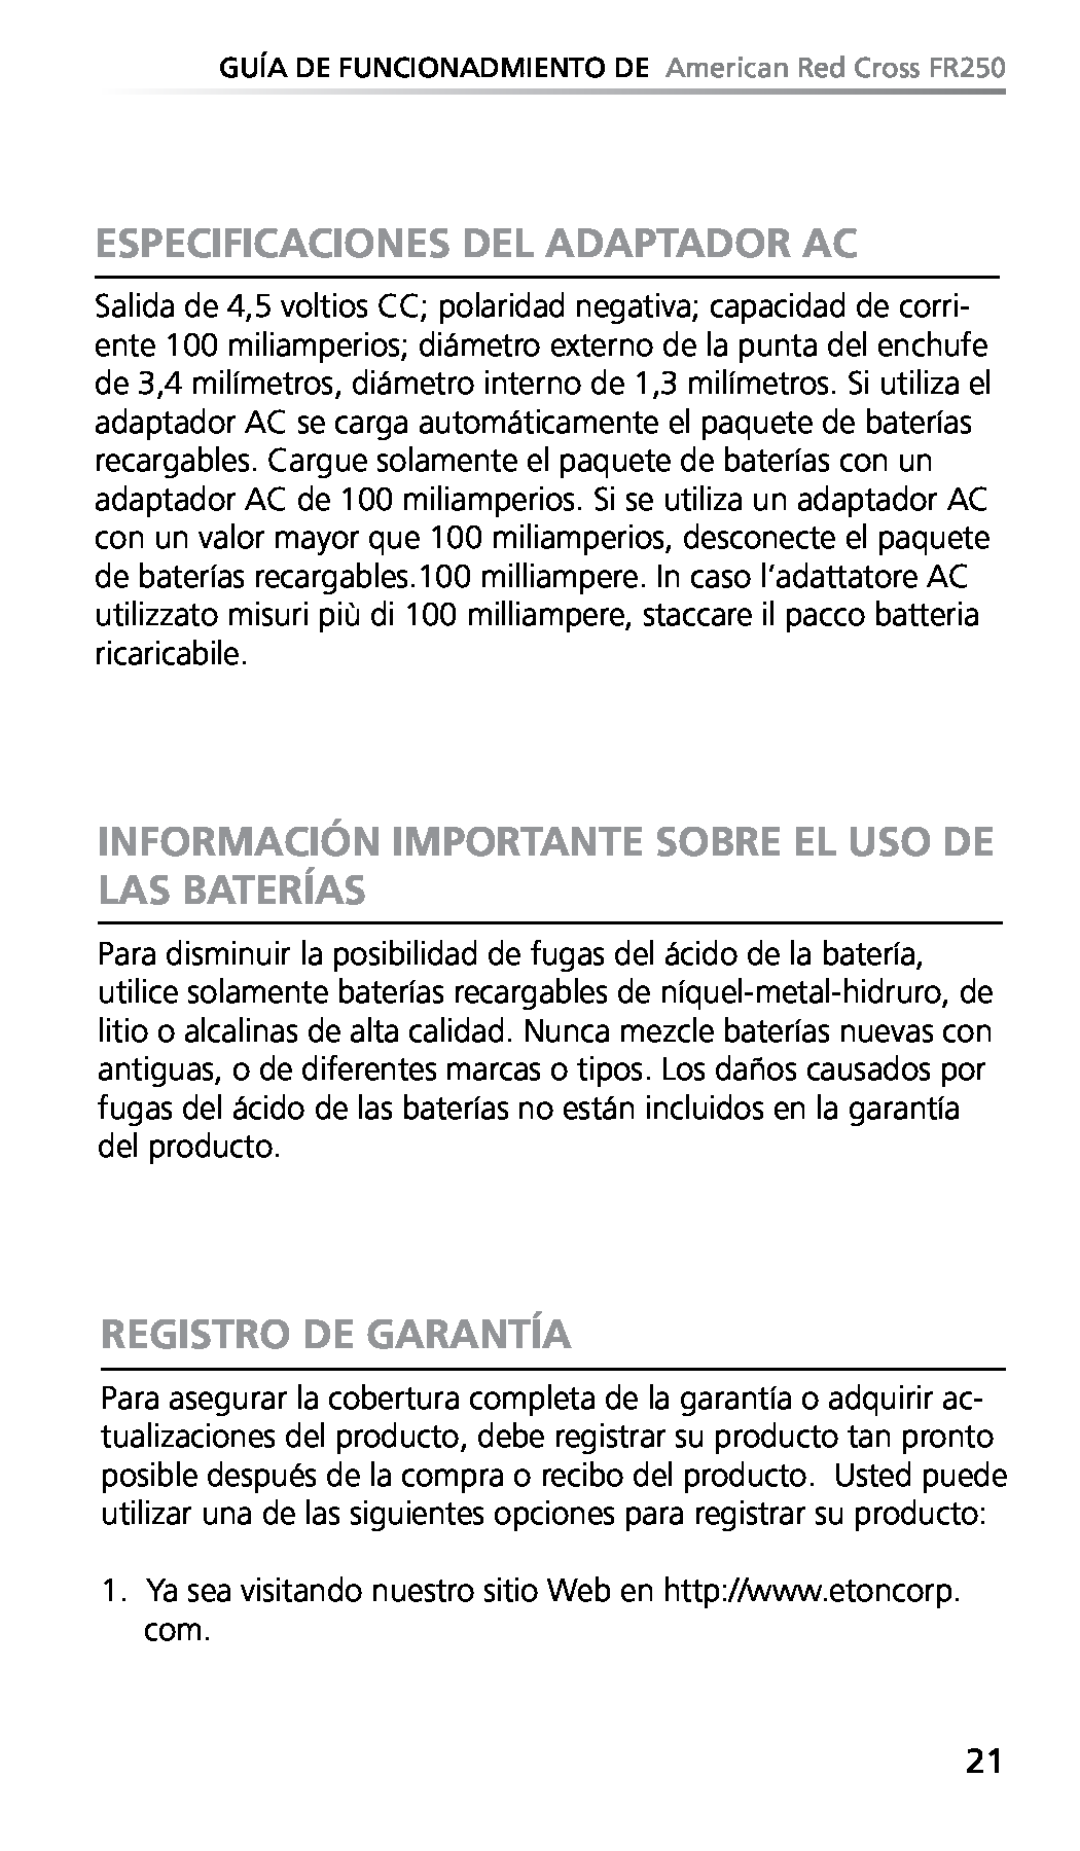 Eton FR250 owner manual Especificaciones Del Adaptador Ac, Registro De Garantía 